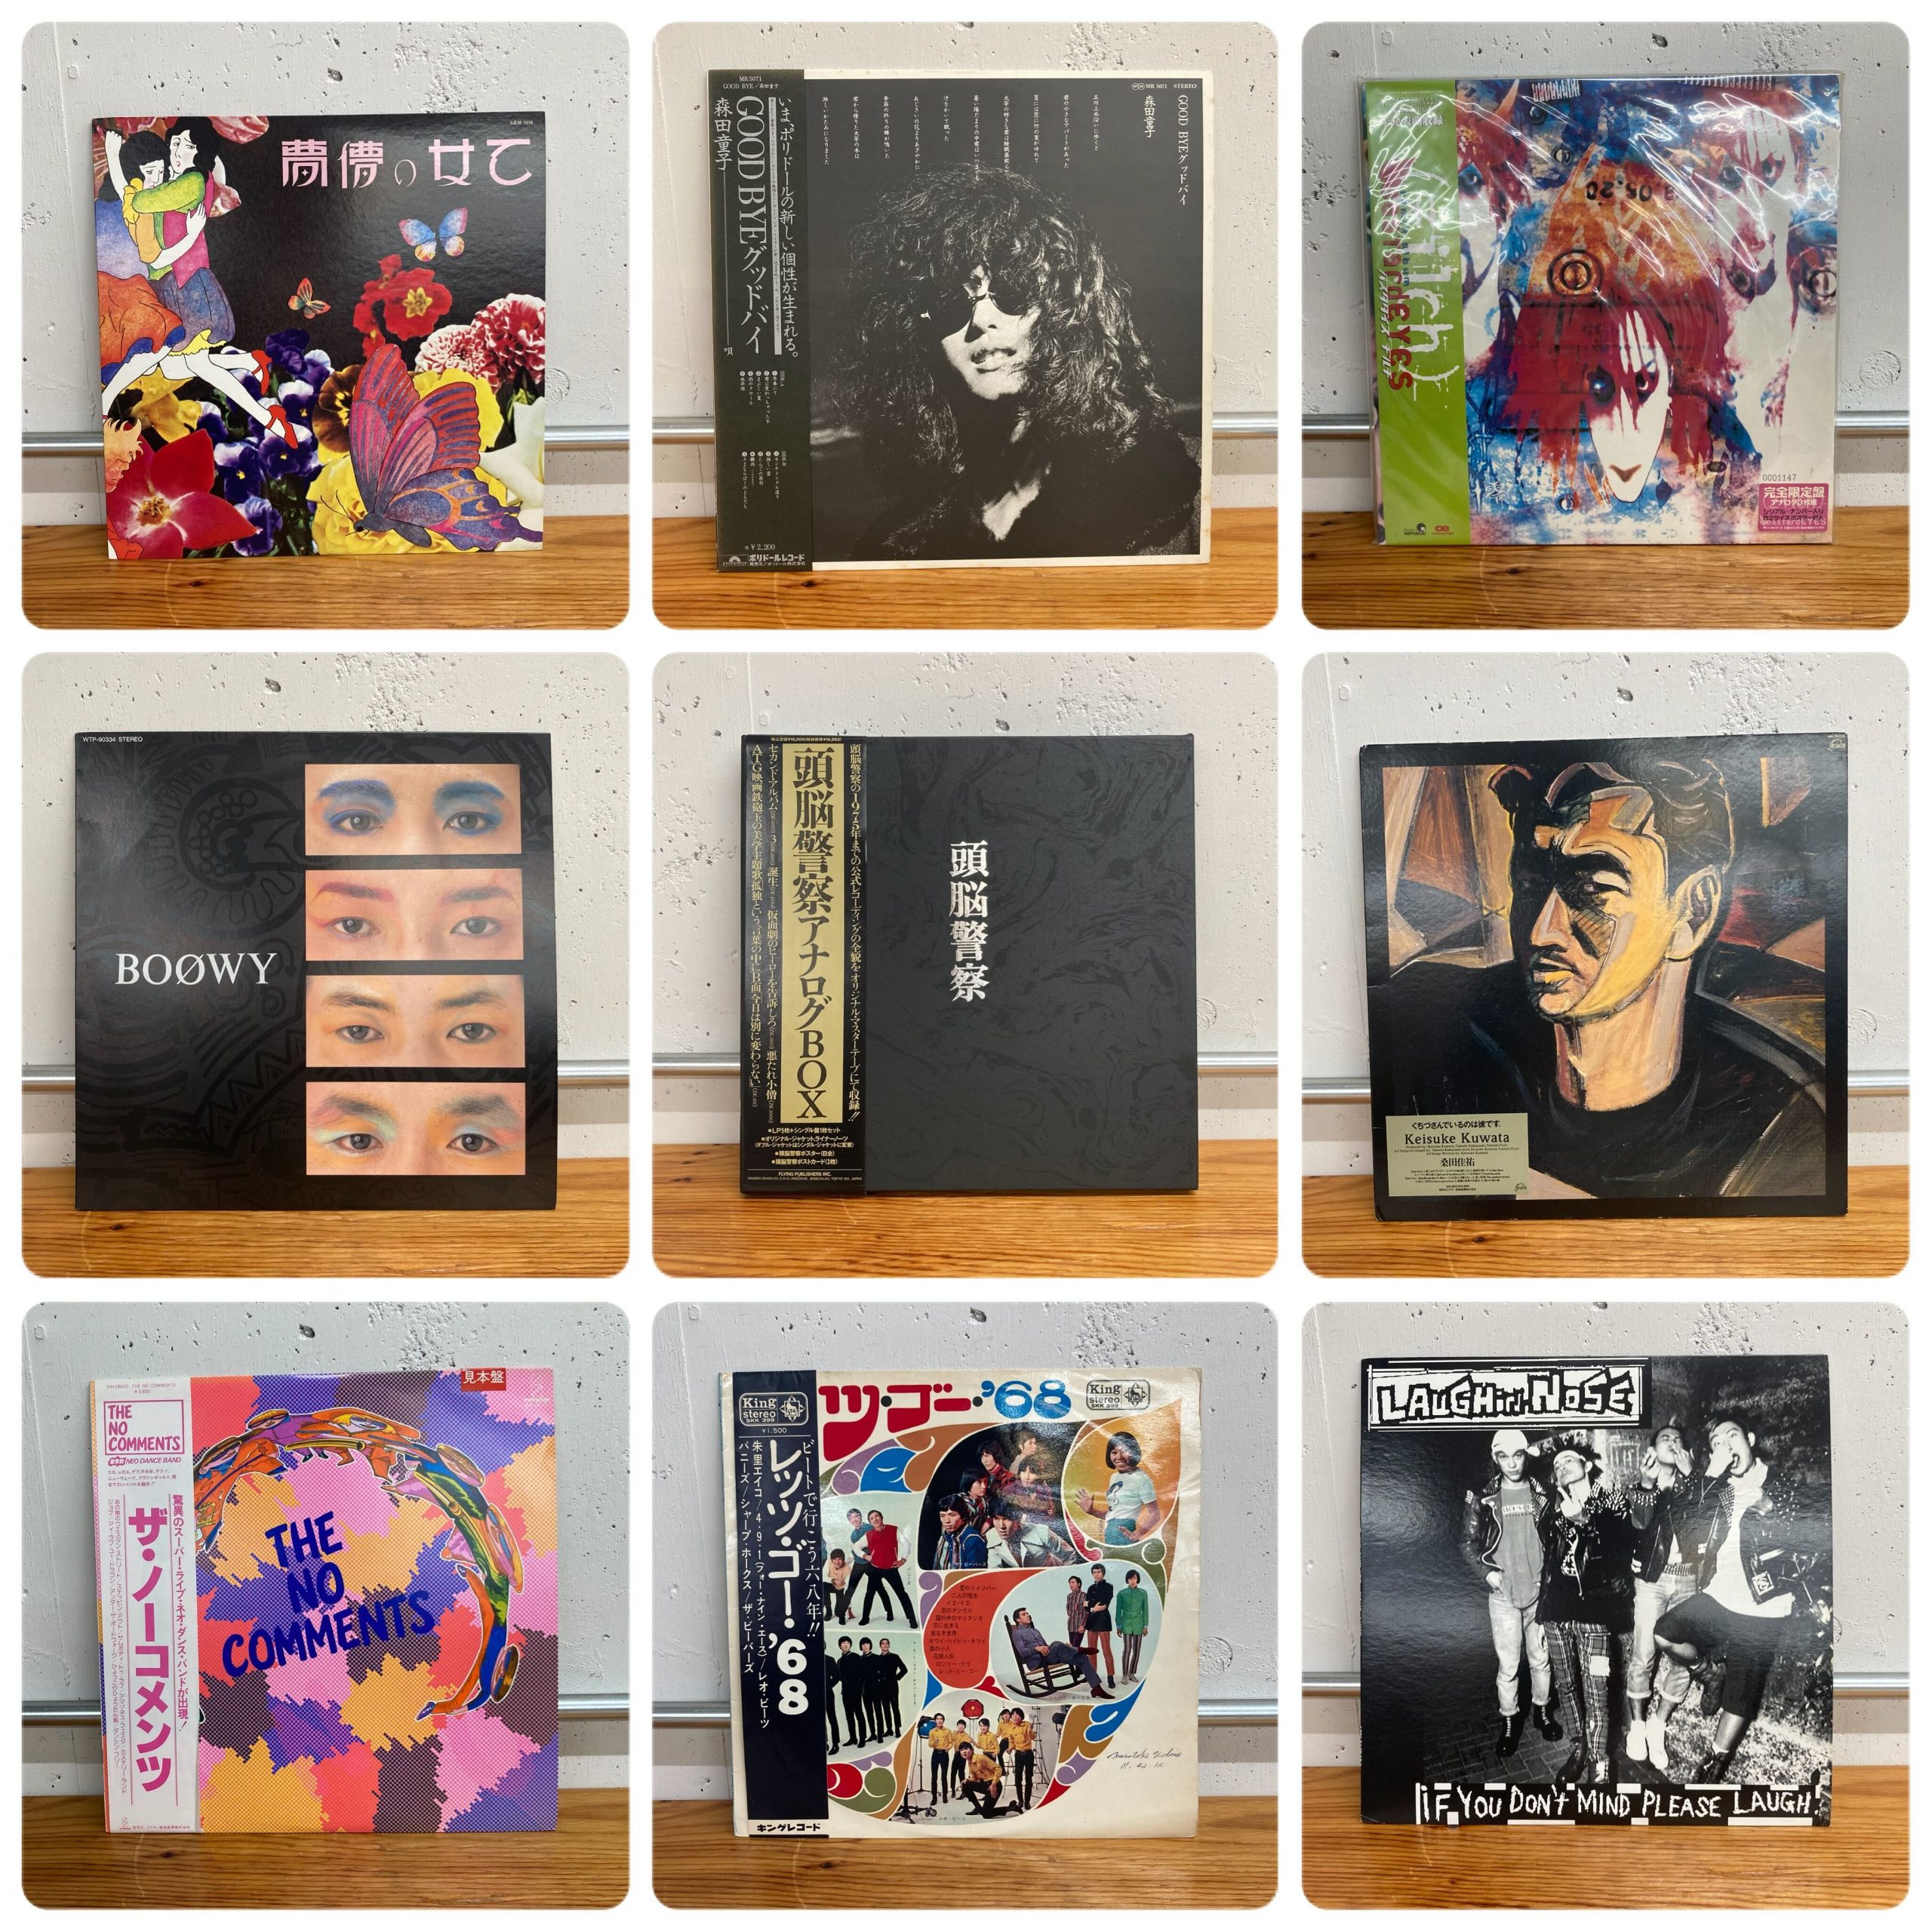 02/26(土) JAPANESE LP&7INCH SALE 【濃密なるレア和モノの世界